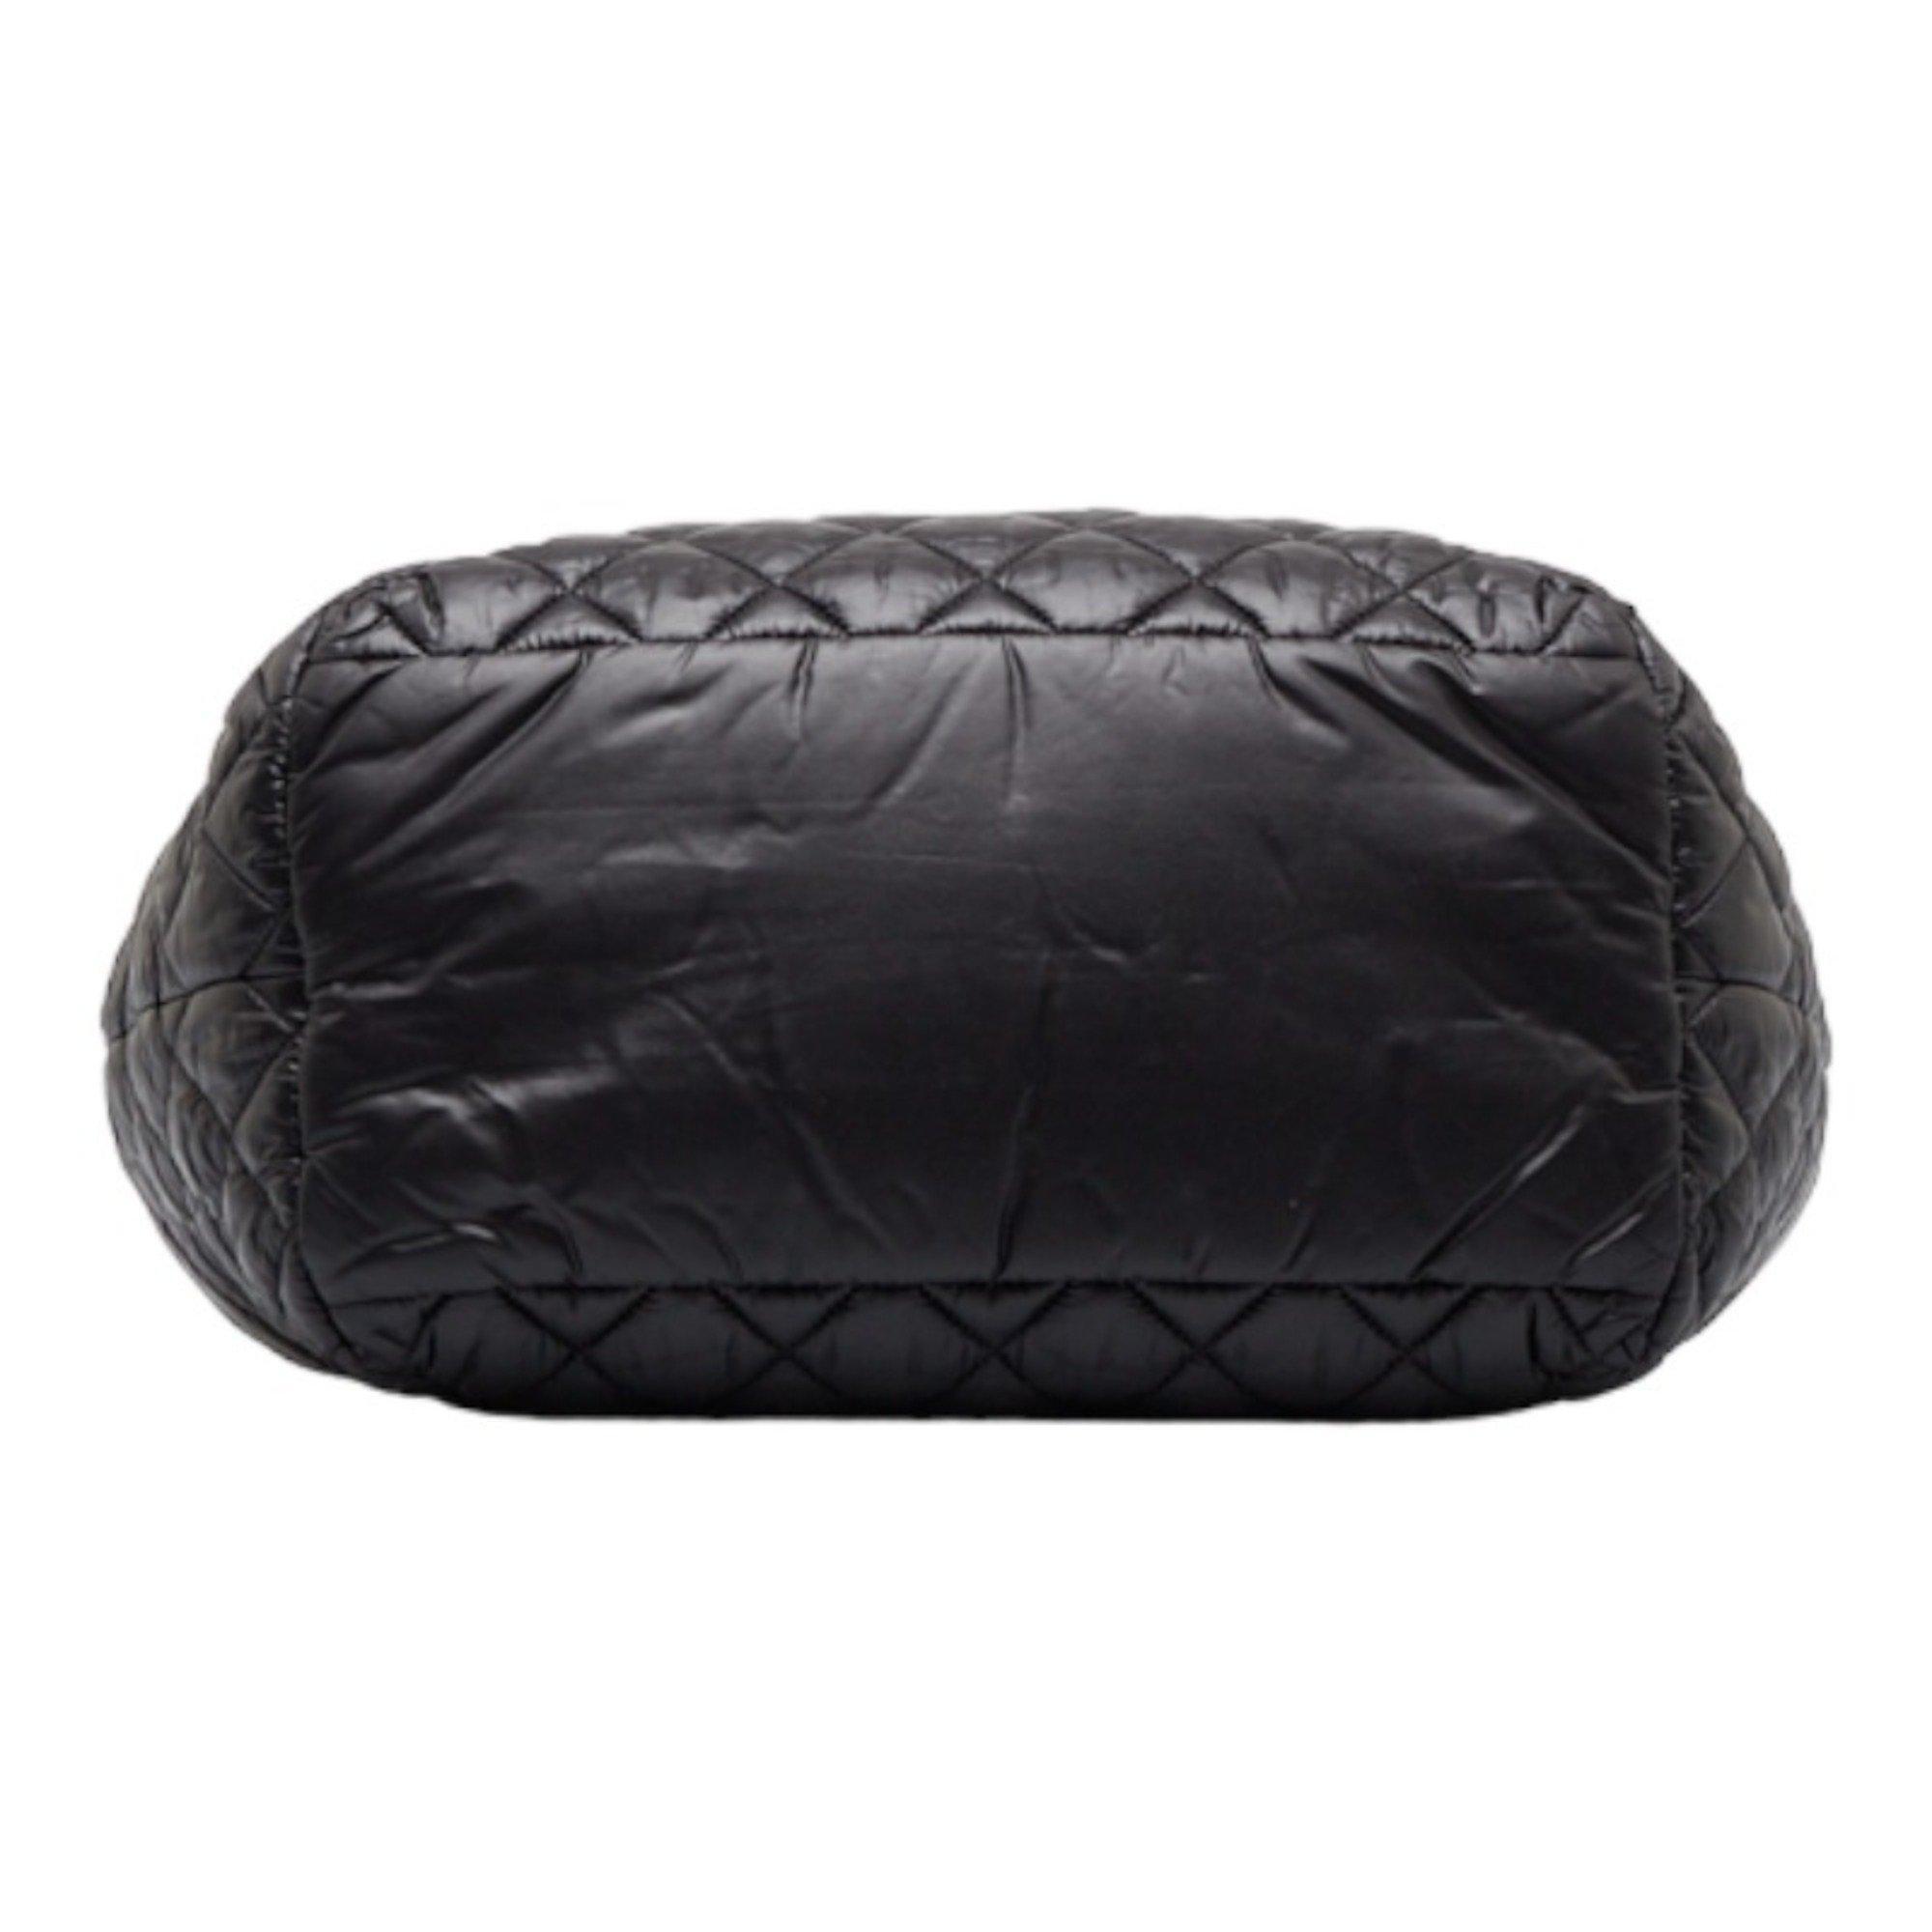 Cocoon handbag Chanel Black in Synthetic - 24793038